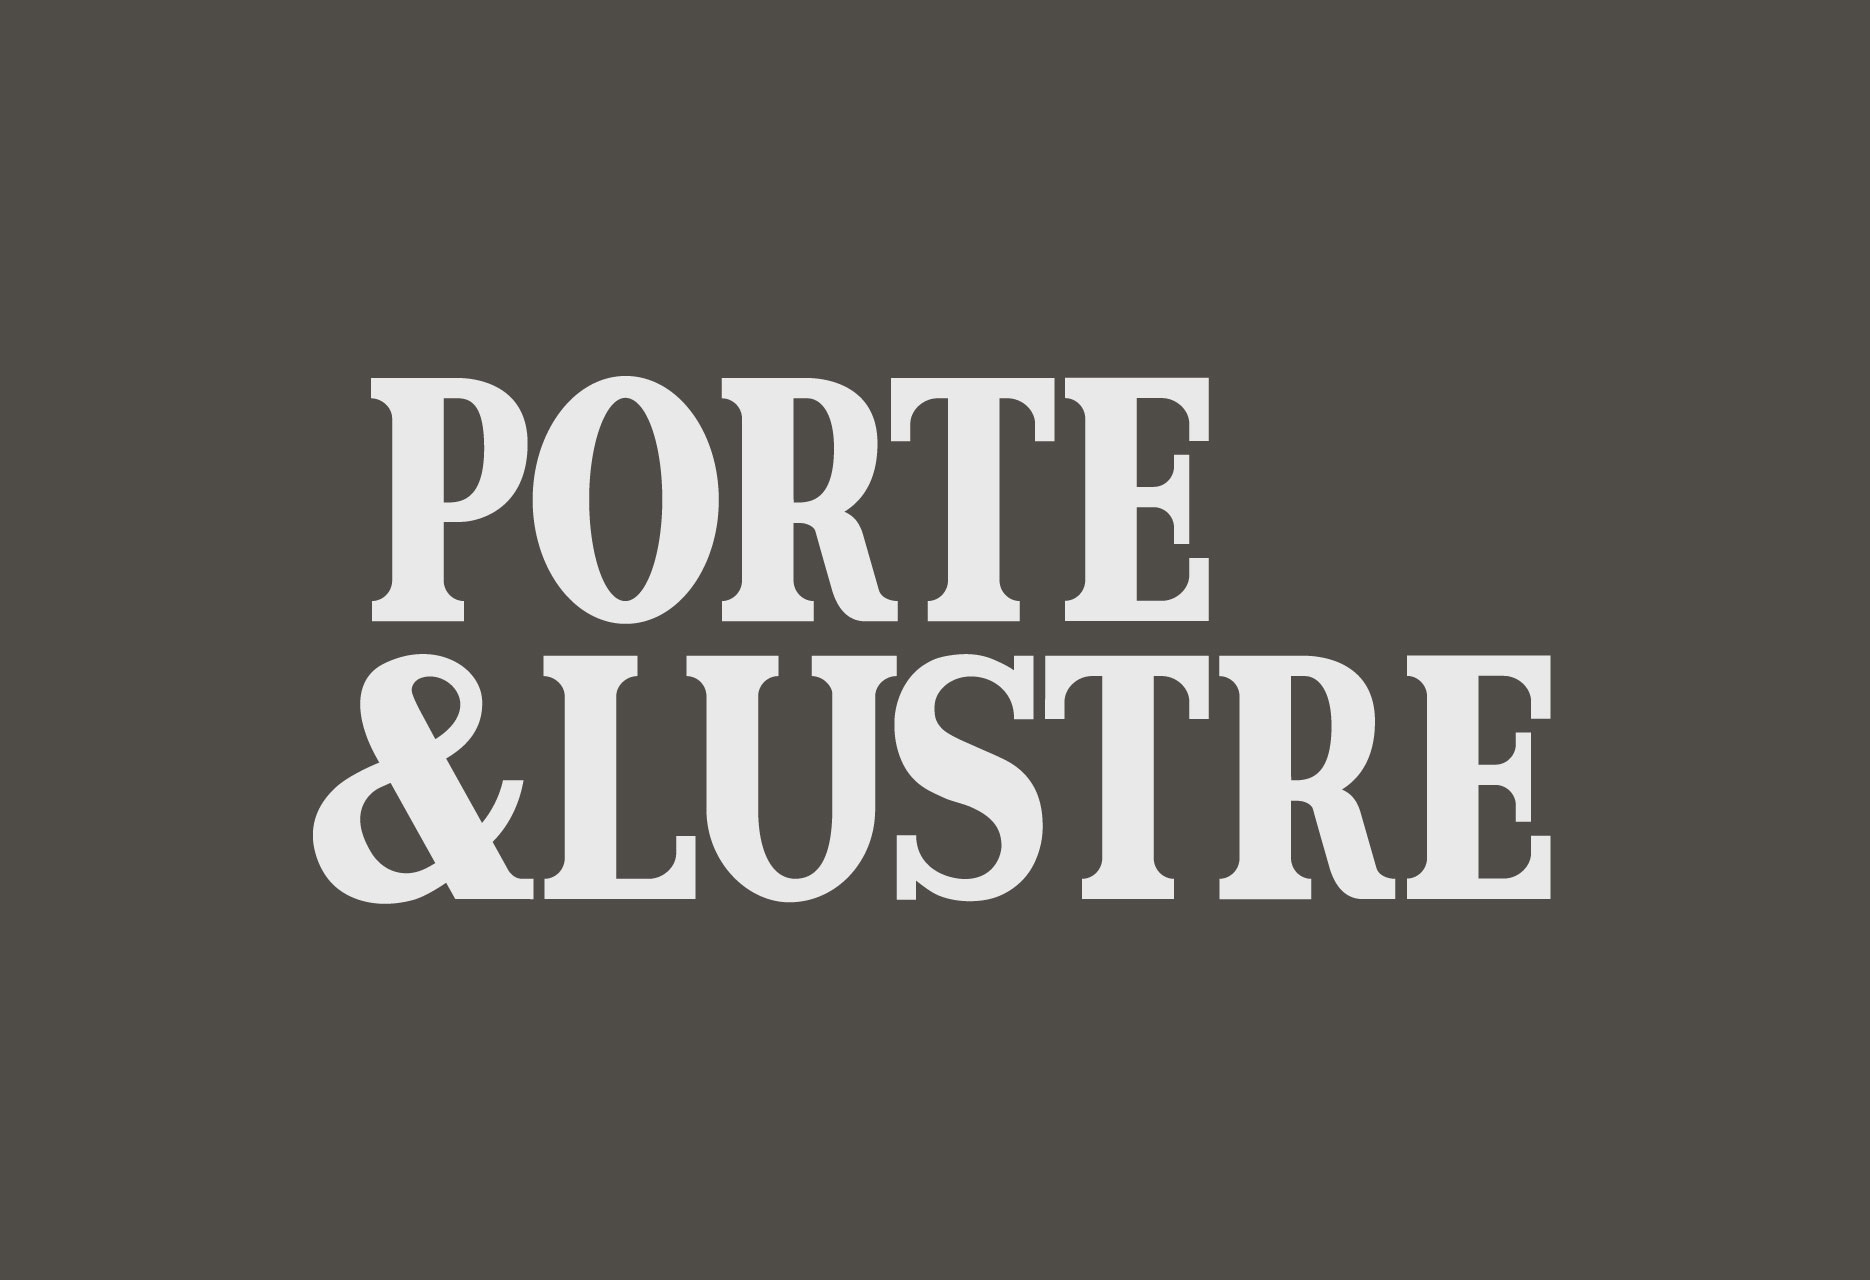 Diseño de marca para limpiabotas PORTE&LUSTRE - diseño web / identidad corporativa / ilustración - 2014